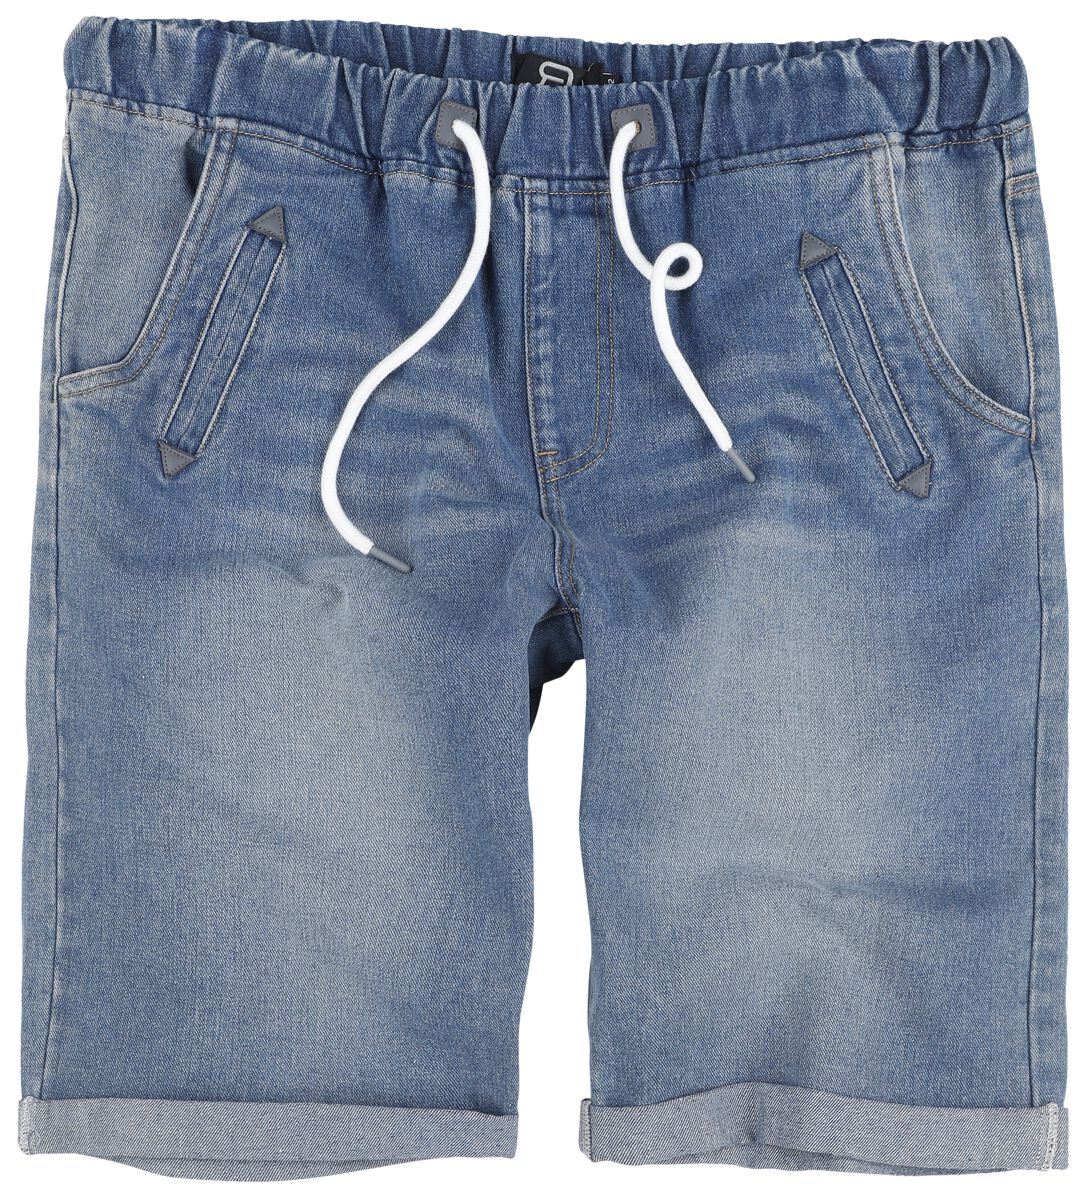 Short für Männer  blau Comfortable Jeans Shorts von RED by EMP